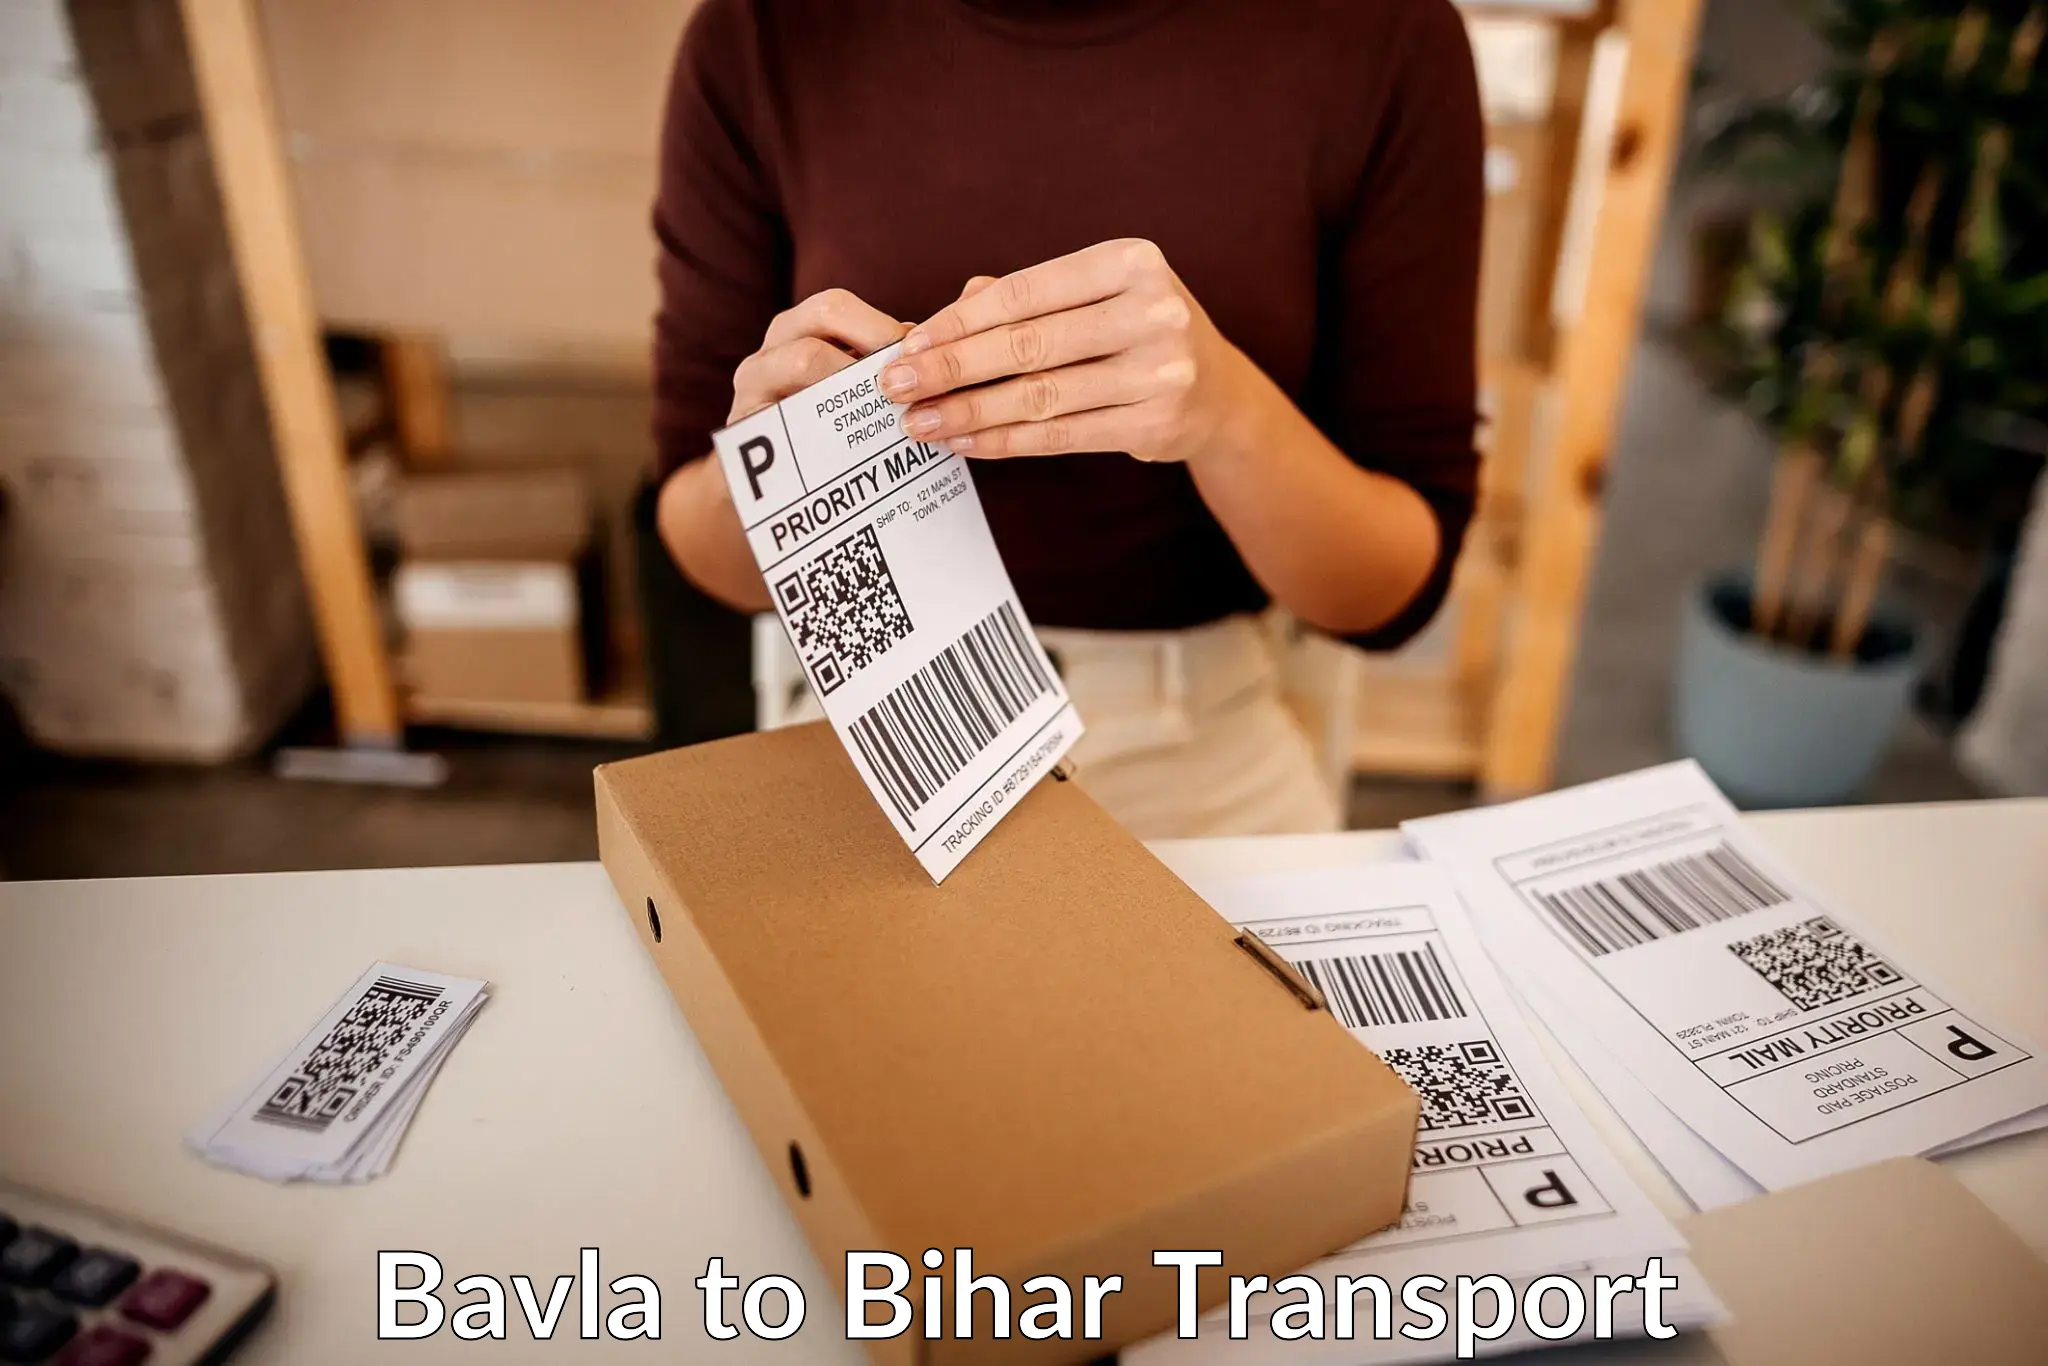 Air cargo transport services Bavla to Rusera